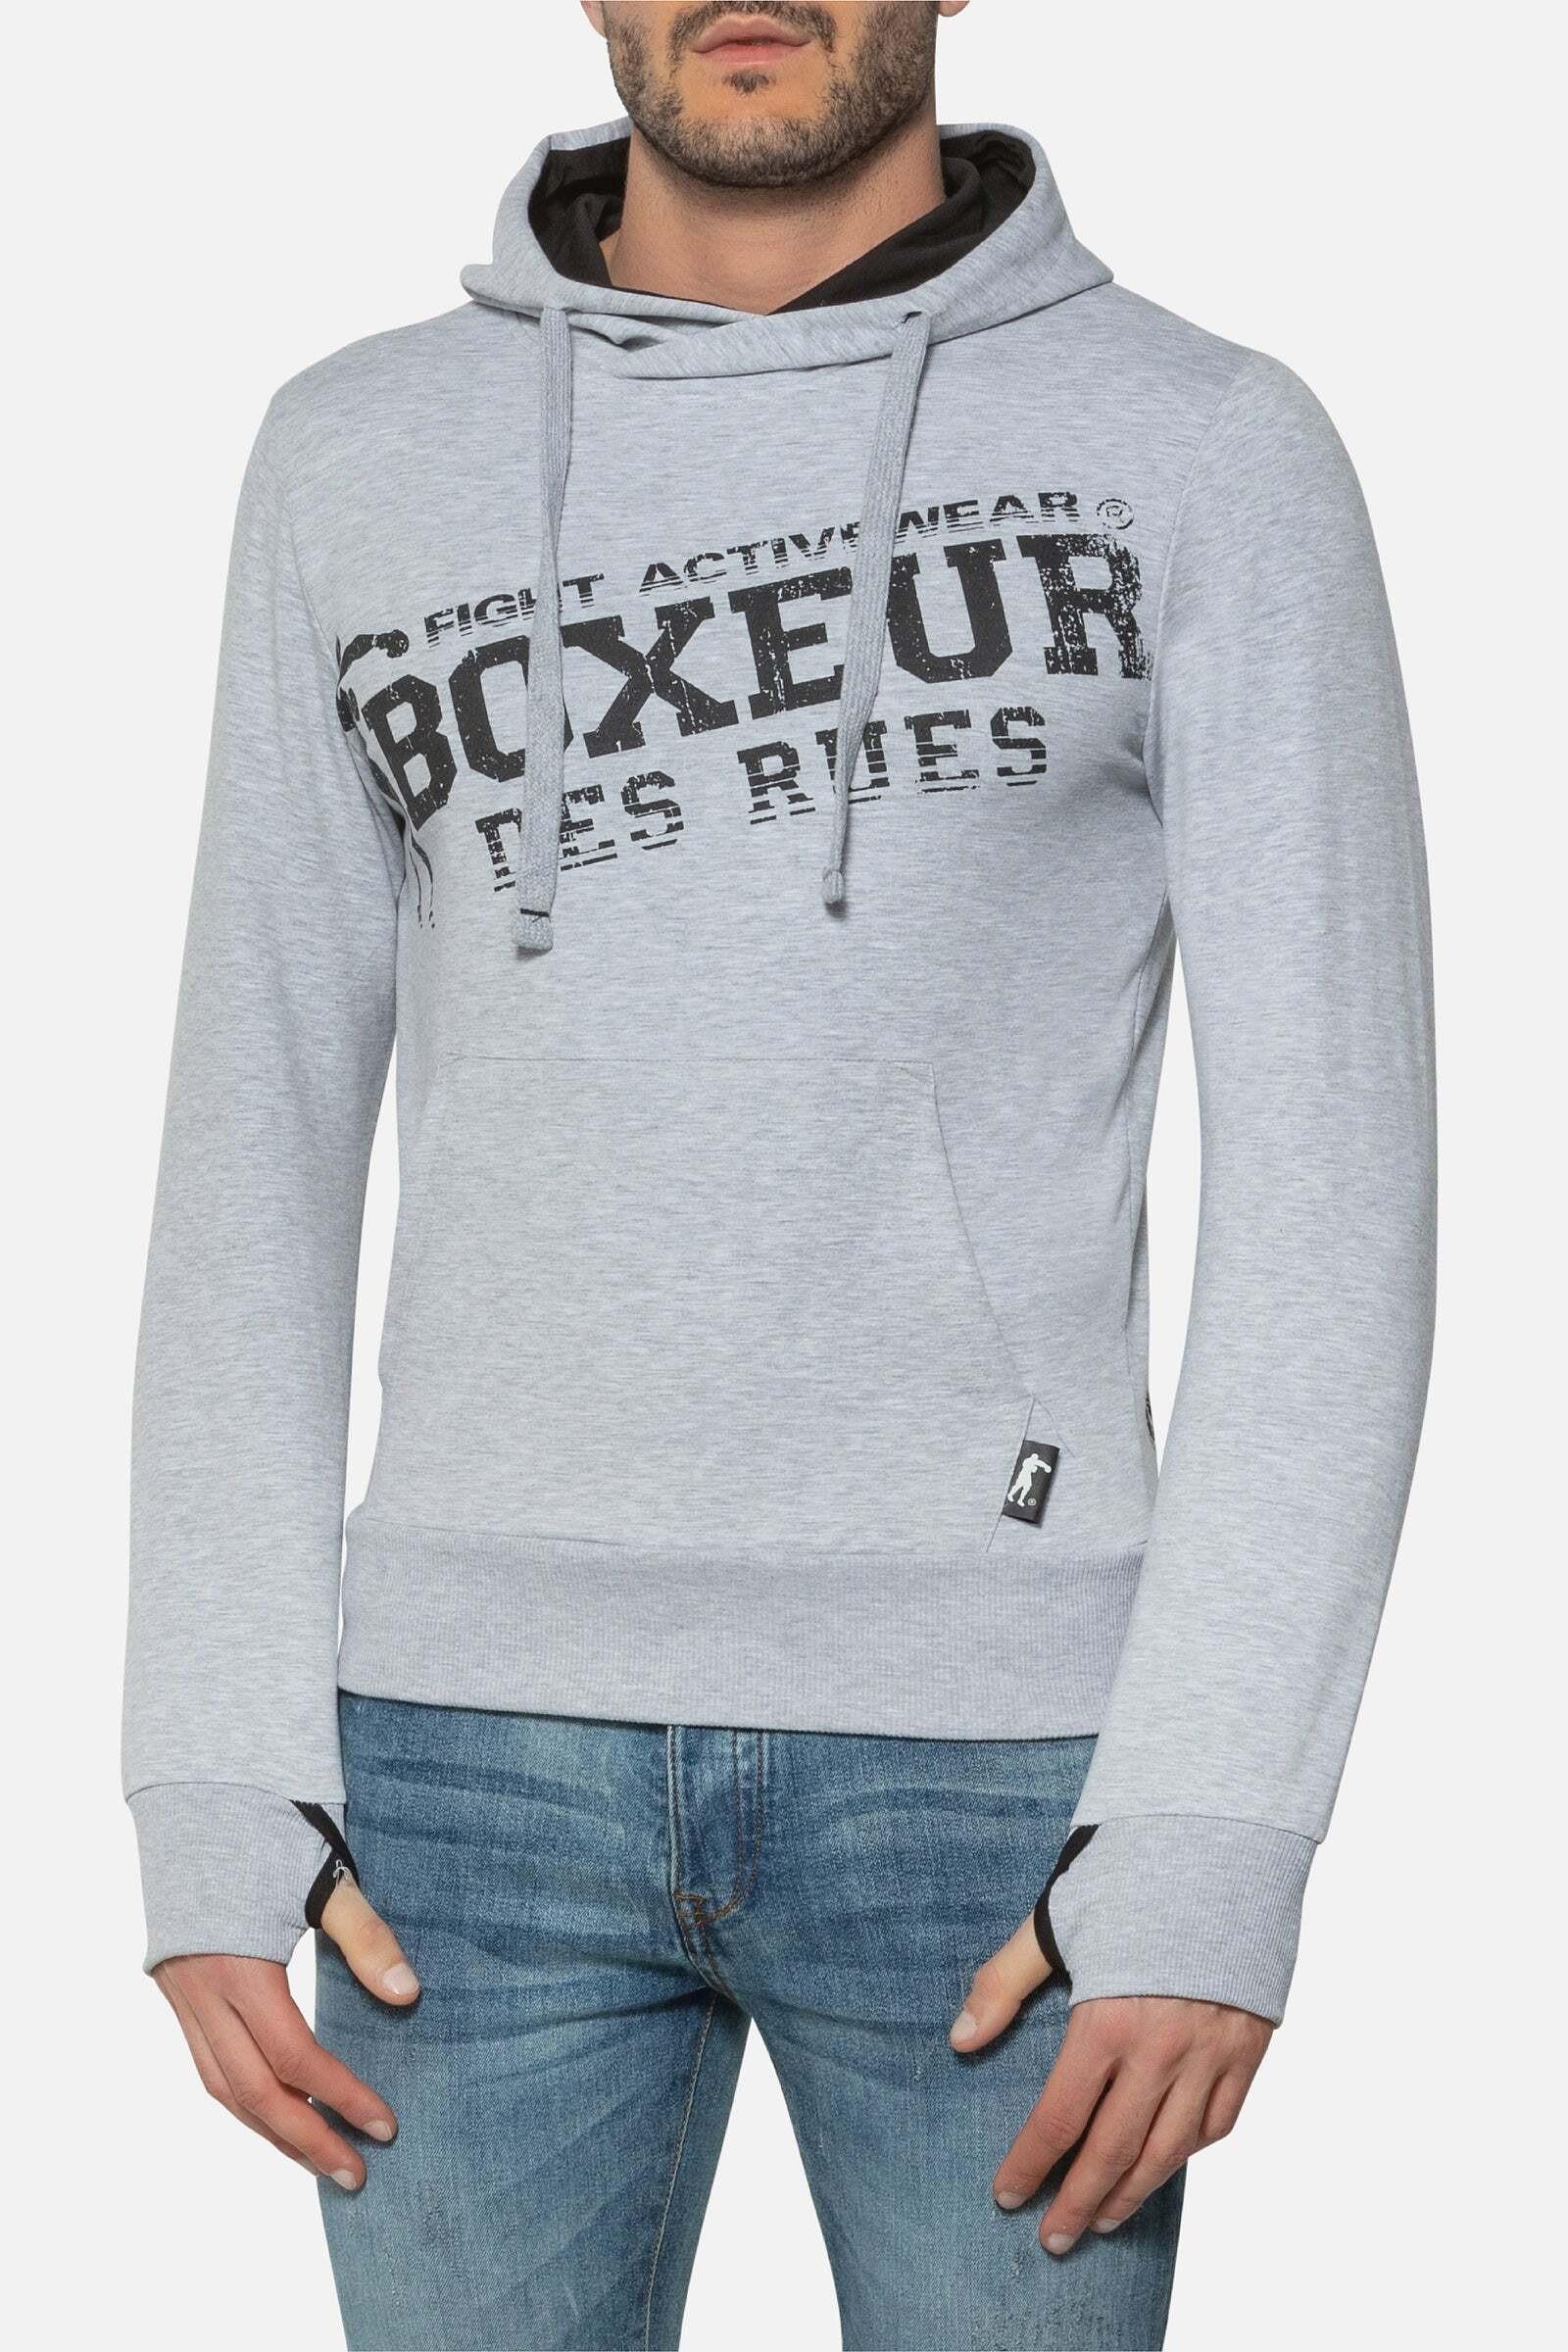 Kapuzenpullover Hooded Sweatshirt With Thumb Openings Herren Taubengrau L von BOXEUR DES RUES